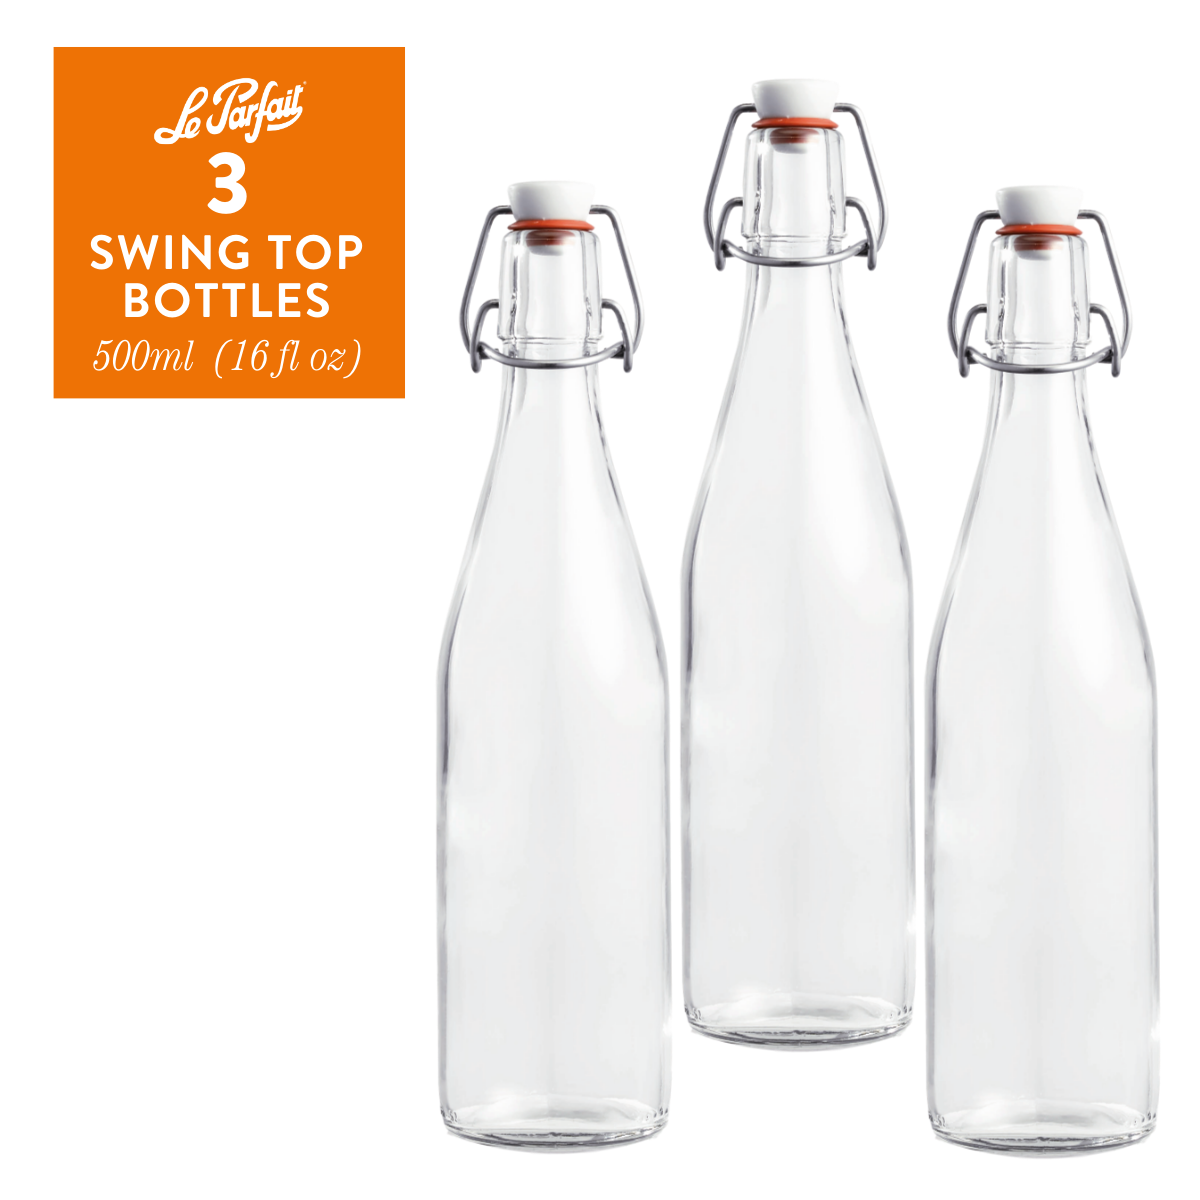 Le Parfait Flip Top Glass Bottles